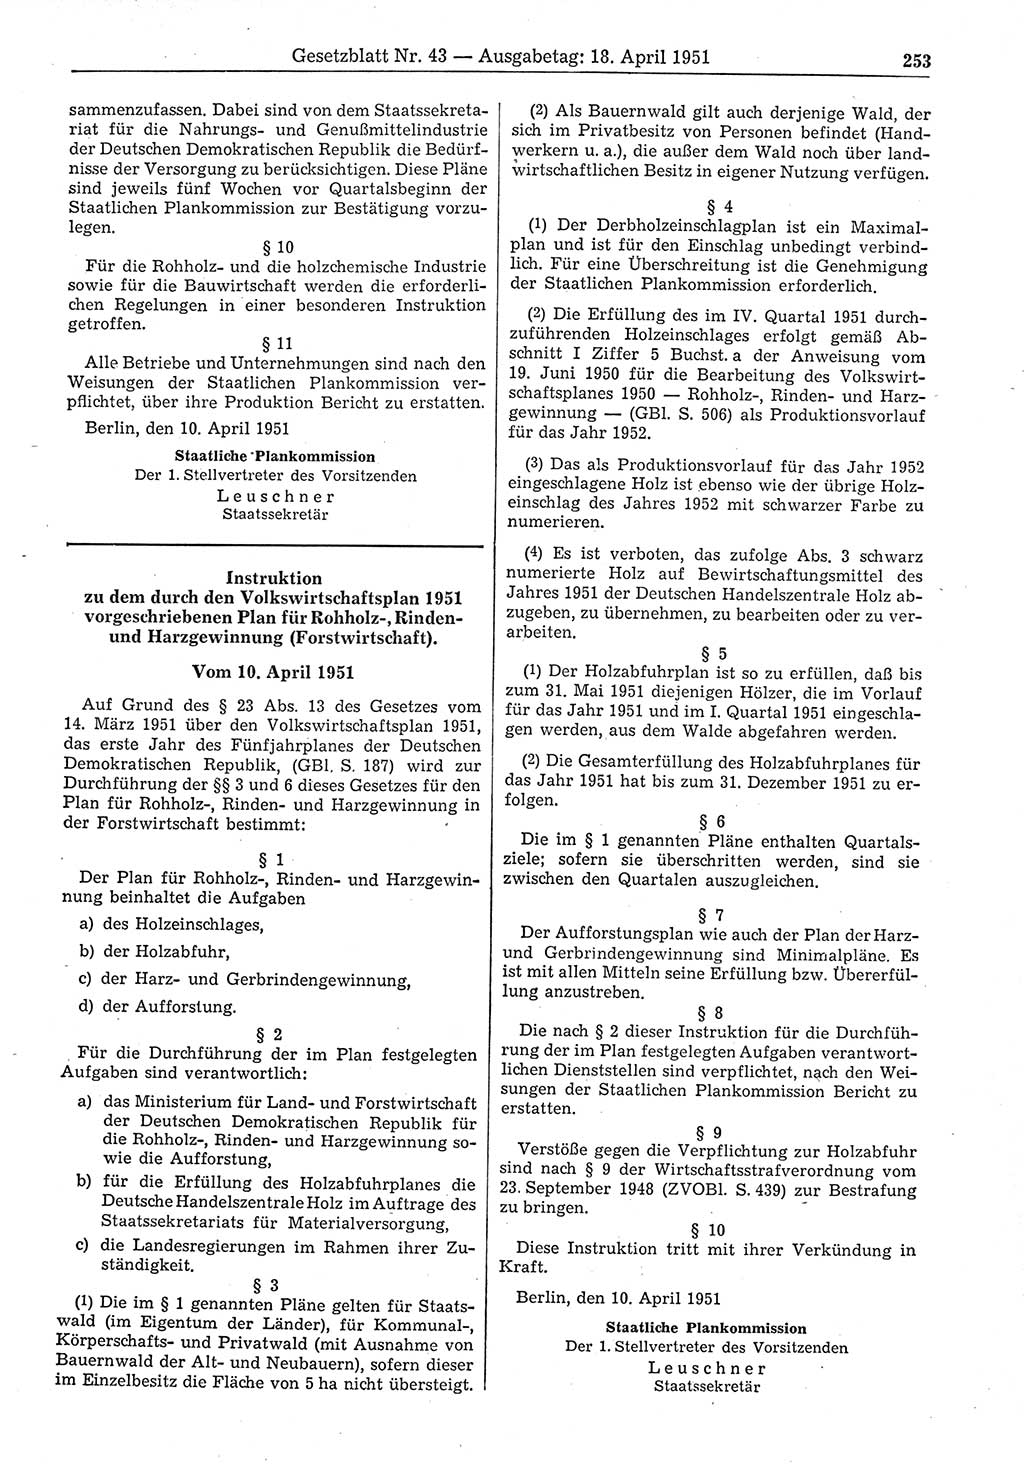 Gesetzblatt (GBl.) der Deutschen Demokratischen Republik (DDR) 1951, Seite 253 (GBl. DDR 1951, S. 253)